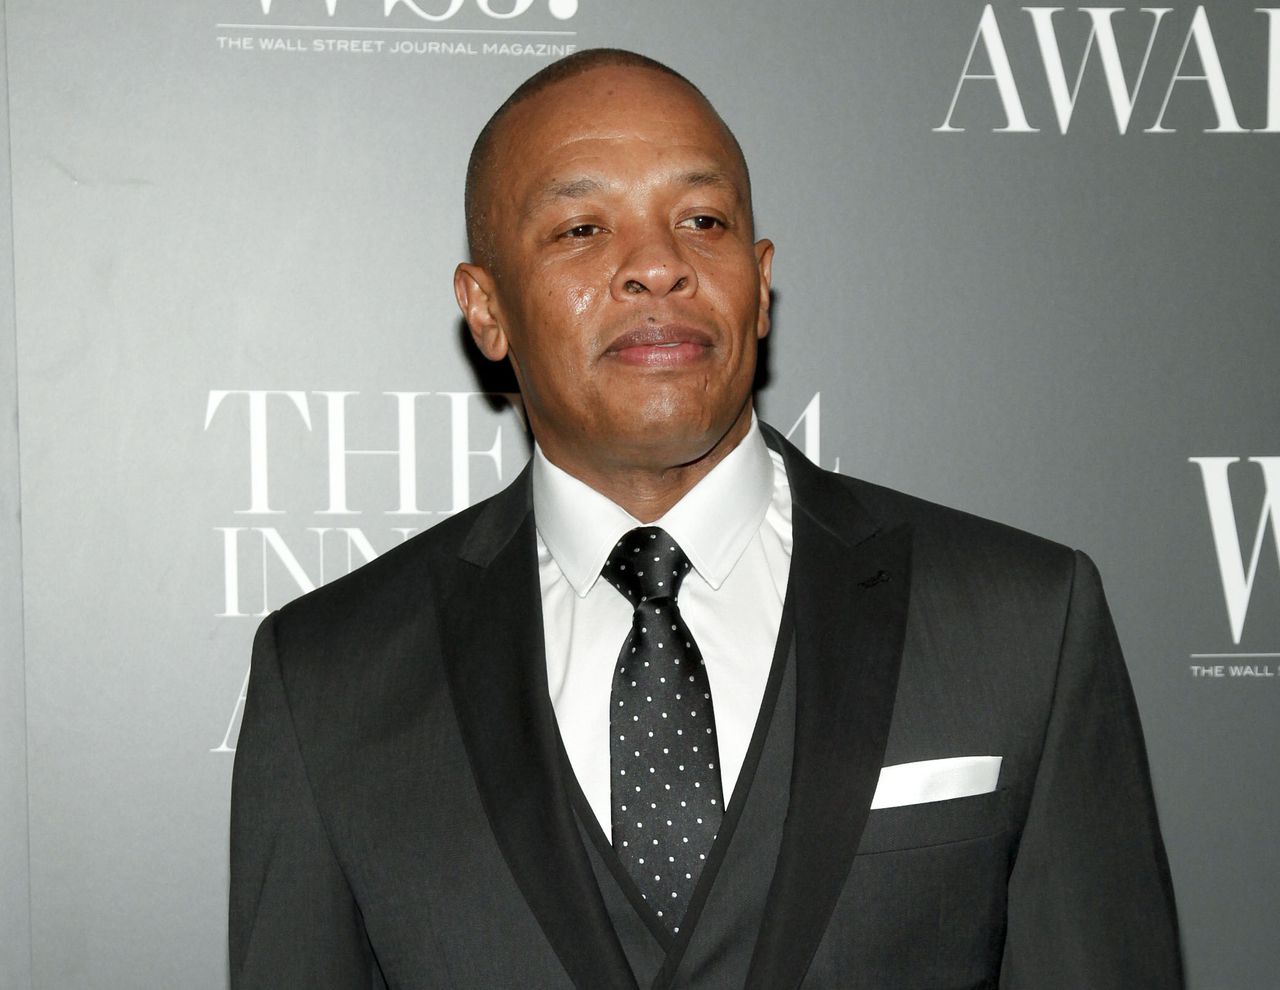 De inmiddels vijftigjarige Dr. Dre heeft vandaag zijn derde album uitgebracht.